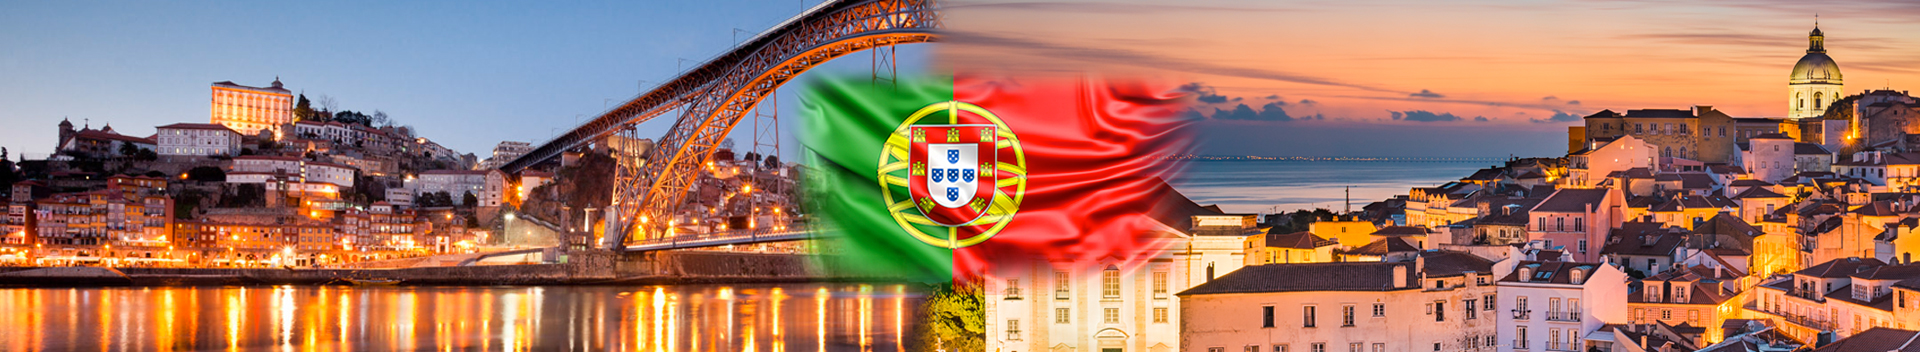 Portekiz vizesi Covid-19